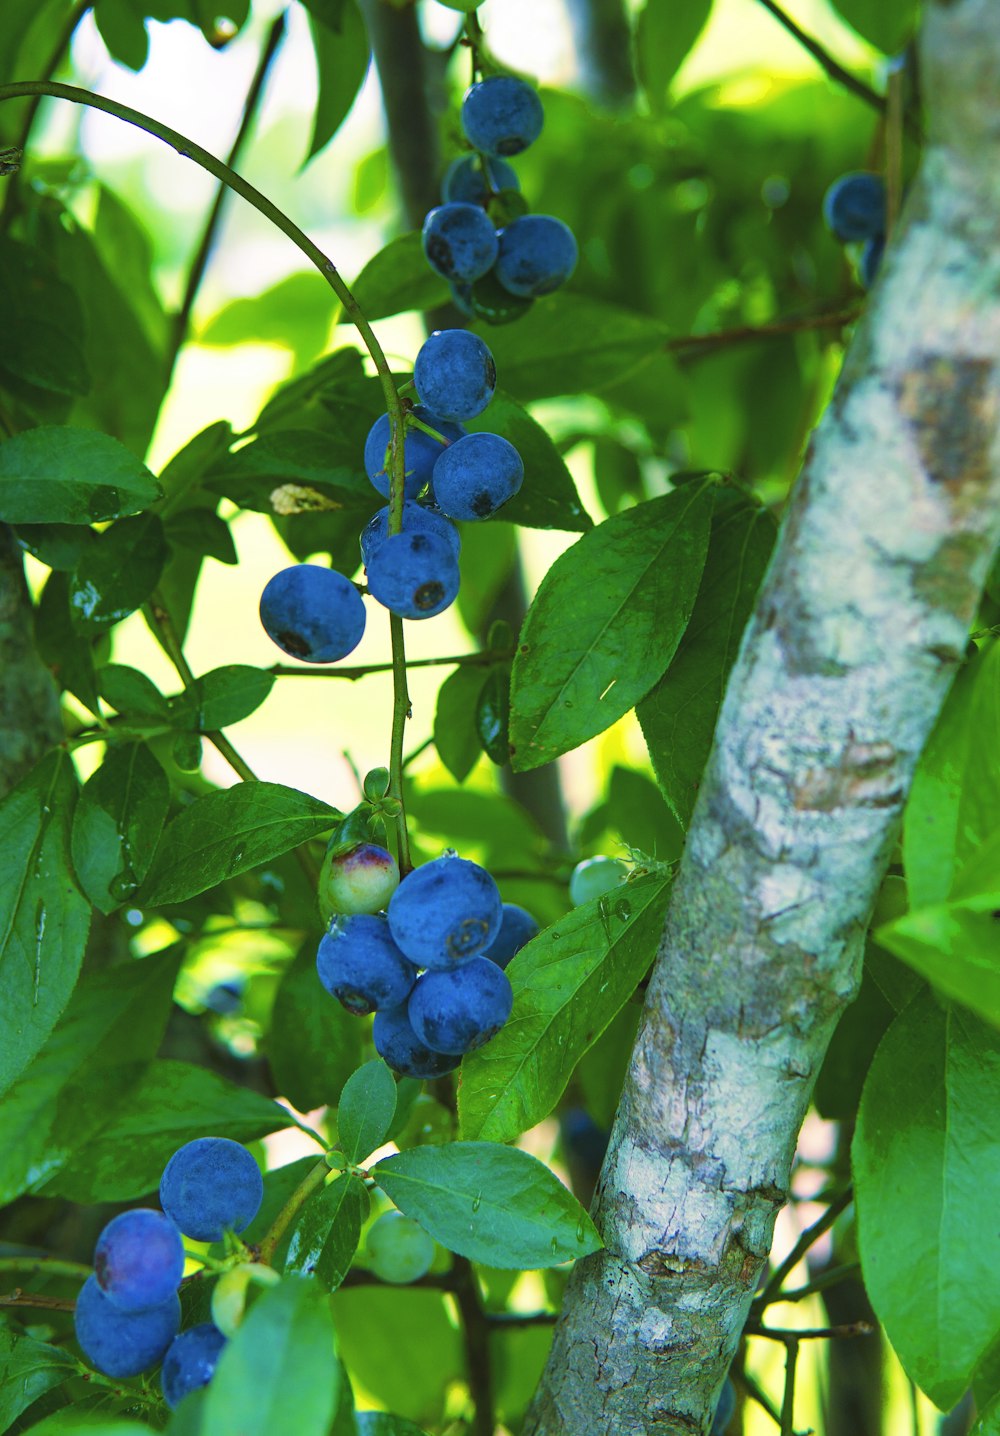 Frutti rotondi blu sull'albero